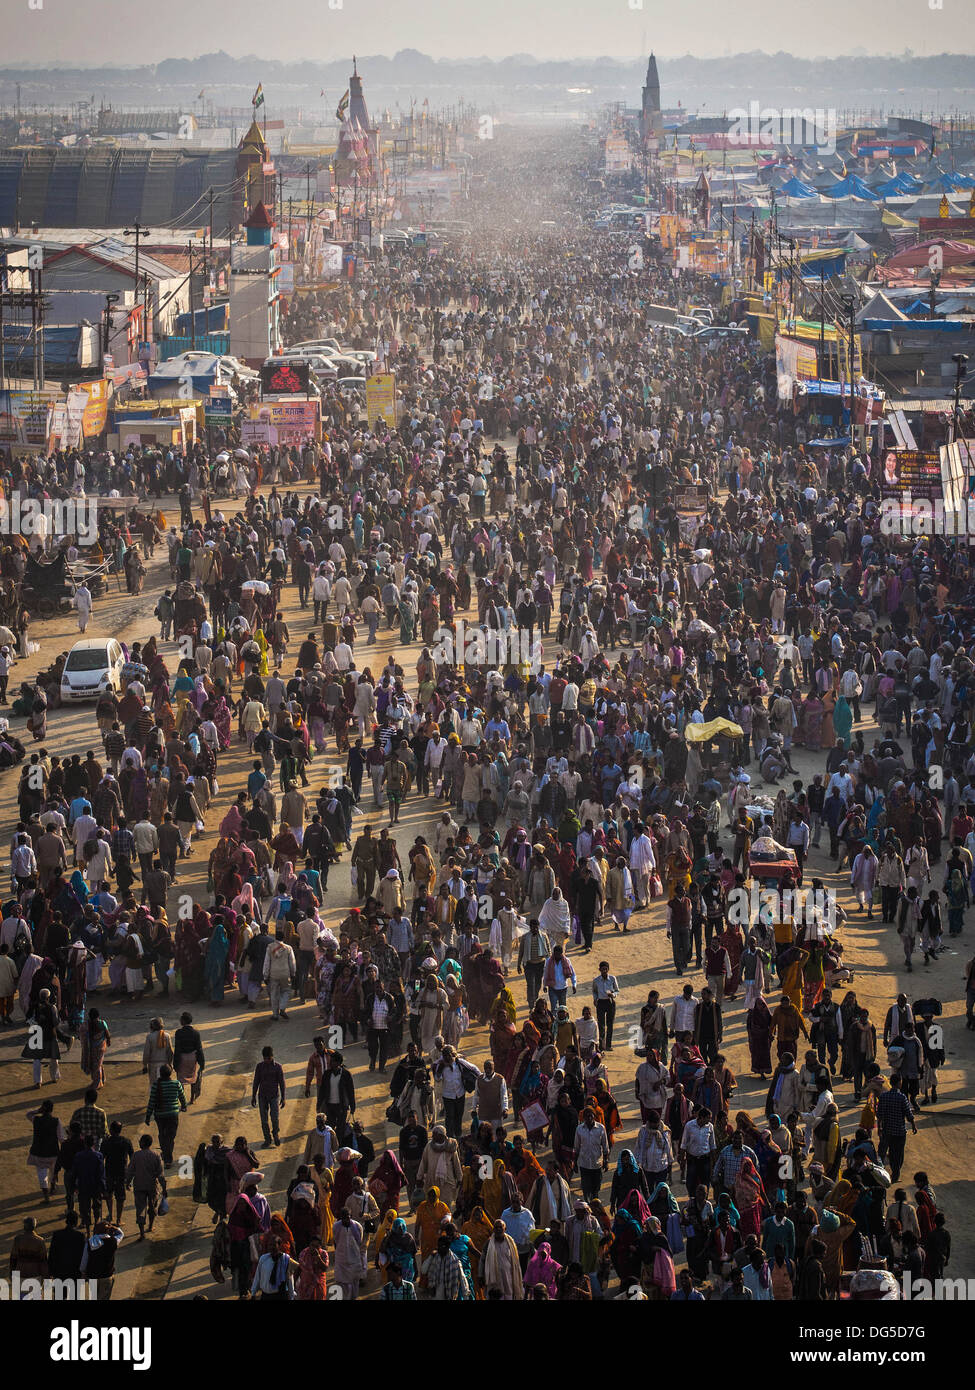 Luftaufnahme von Massen an der Kumbh Mela Festival, das weltweit größte religiöse Versammlung, in Singapore (Prayagraj), Uttar Pradesh, Indien. Stockfoto